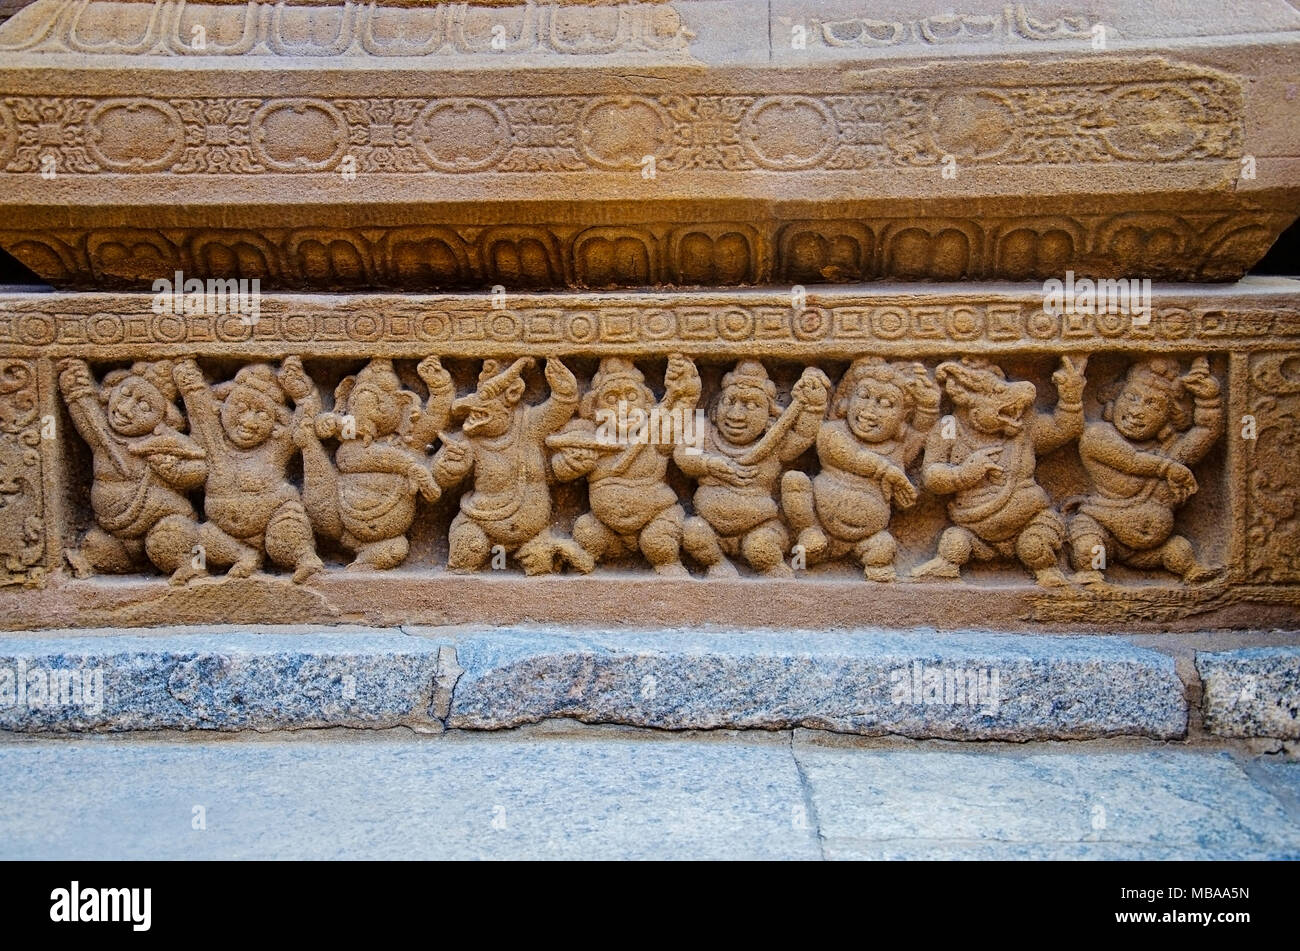 Idoles sculptées sur le mur extérieur du temple de Kanchi Kailasanathar, Kanchipuram, Tamil Nadu, Inde. Ancien Temple Hindou Shiva Banque D'Images